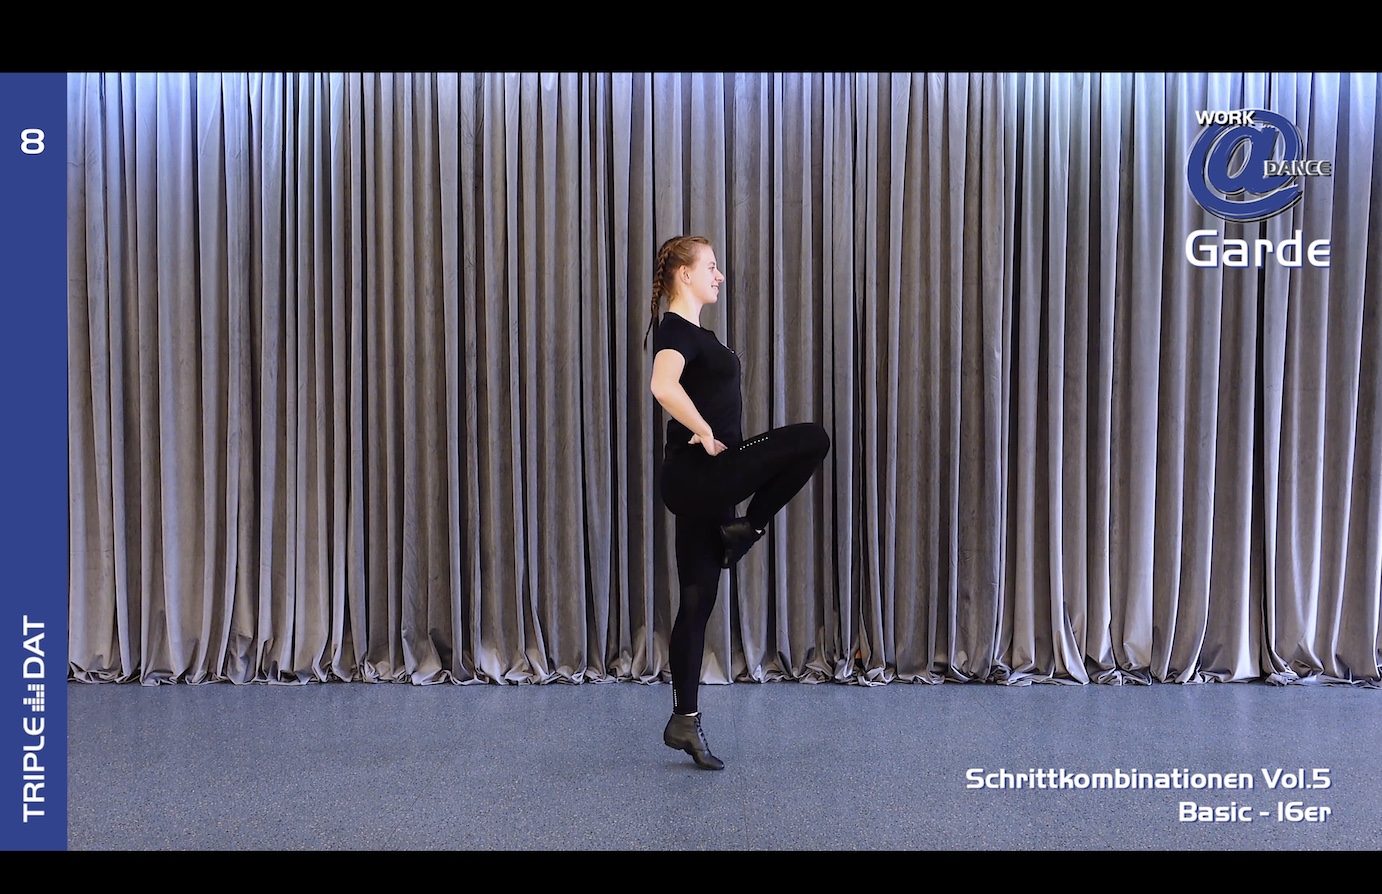 Work@Dance Garde Schrittkombinationen 05 - Basic